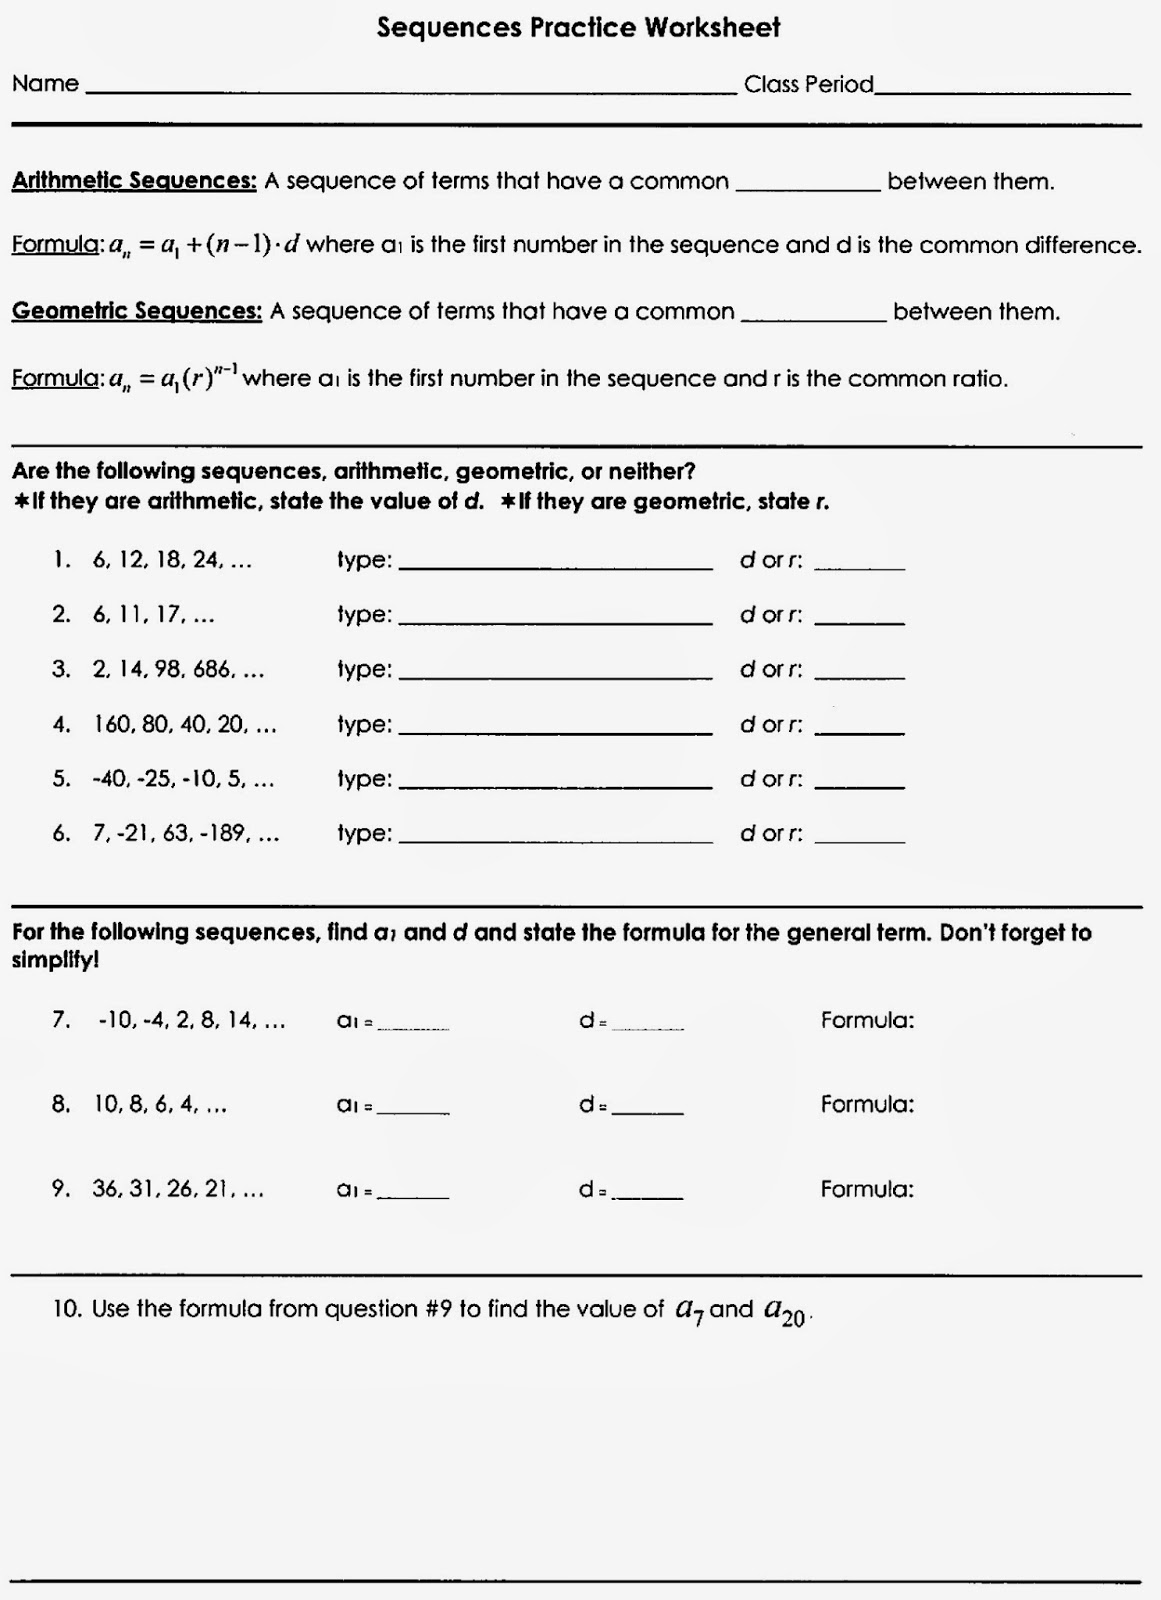 Mr. Matt's Math Classes: Assignment - Sequences Practice Worksheet